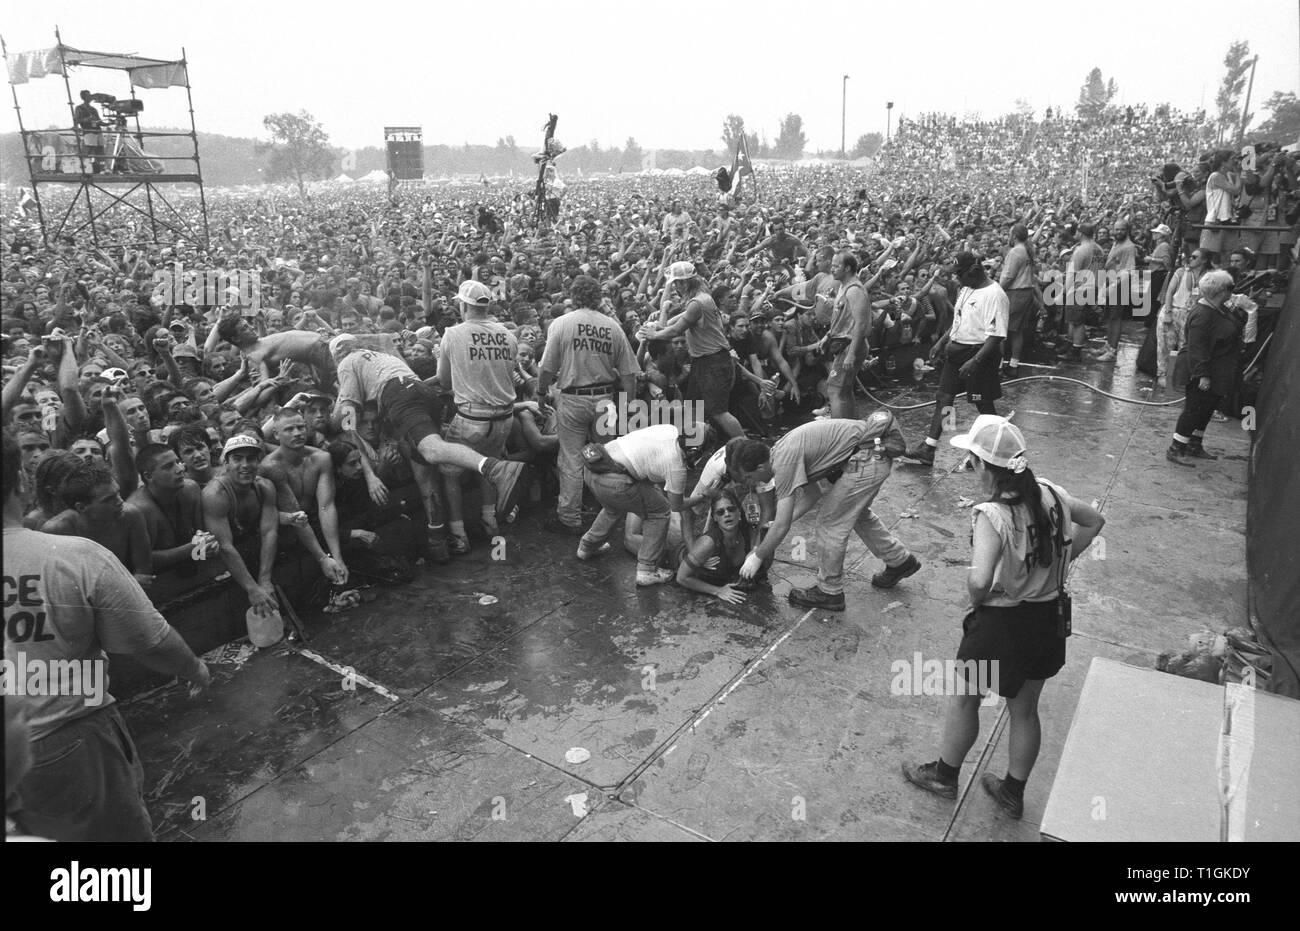 Grand angle Cette photo montre la foule massive et à l'activité de la foule près de l'étape à Woodstock 94 dans Saugerties, New York. Banque D'Images